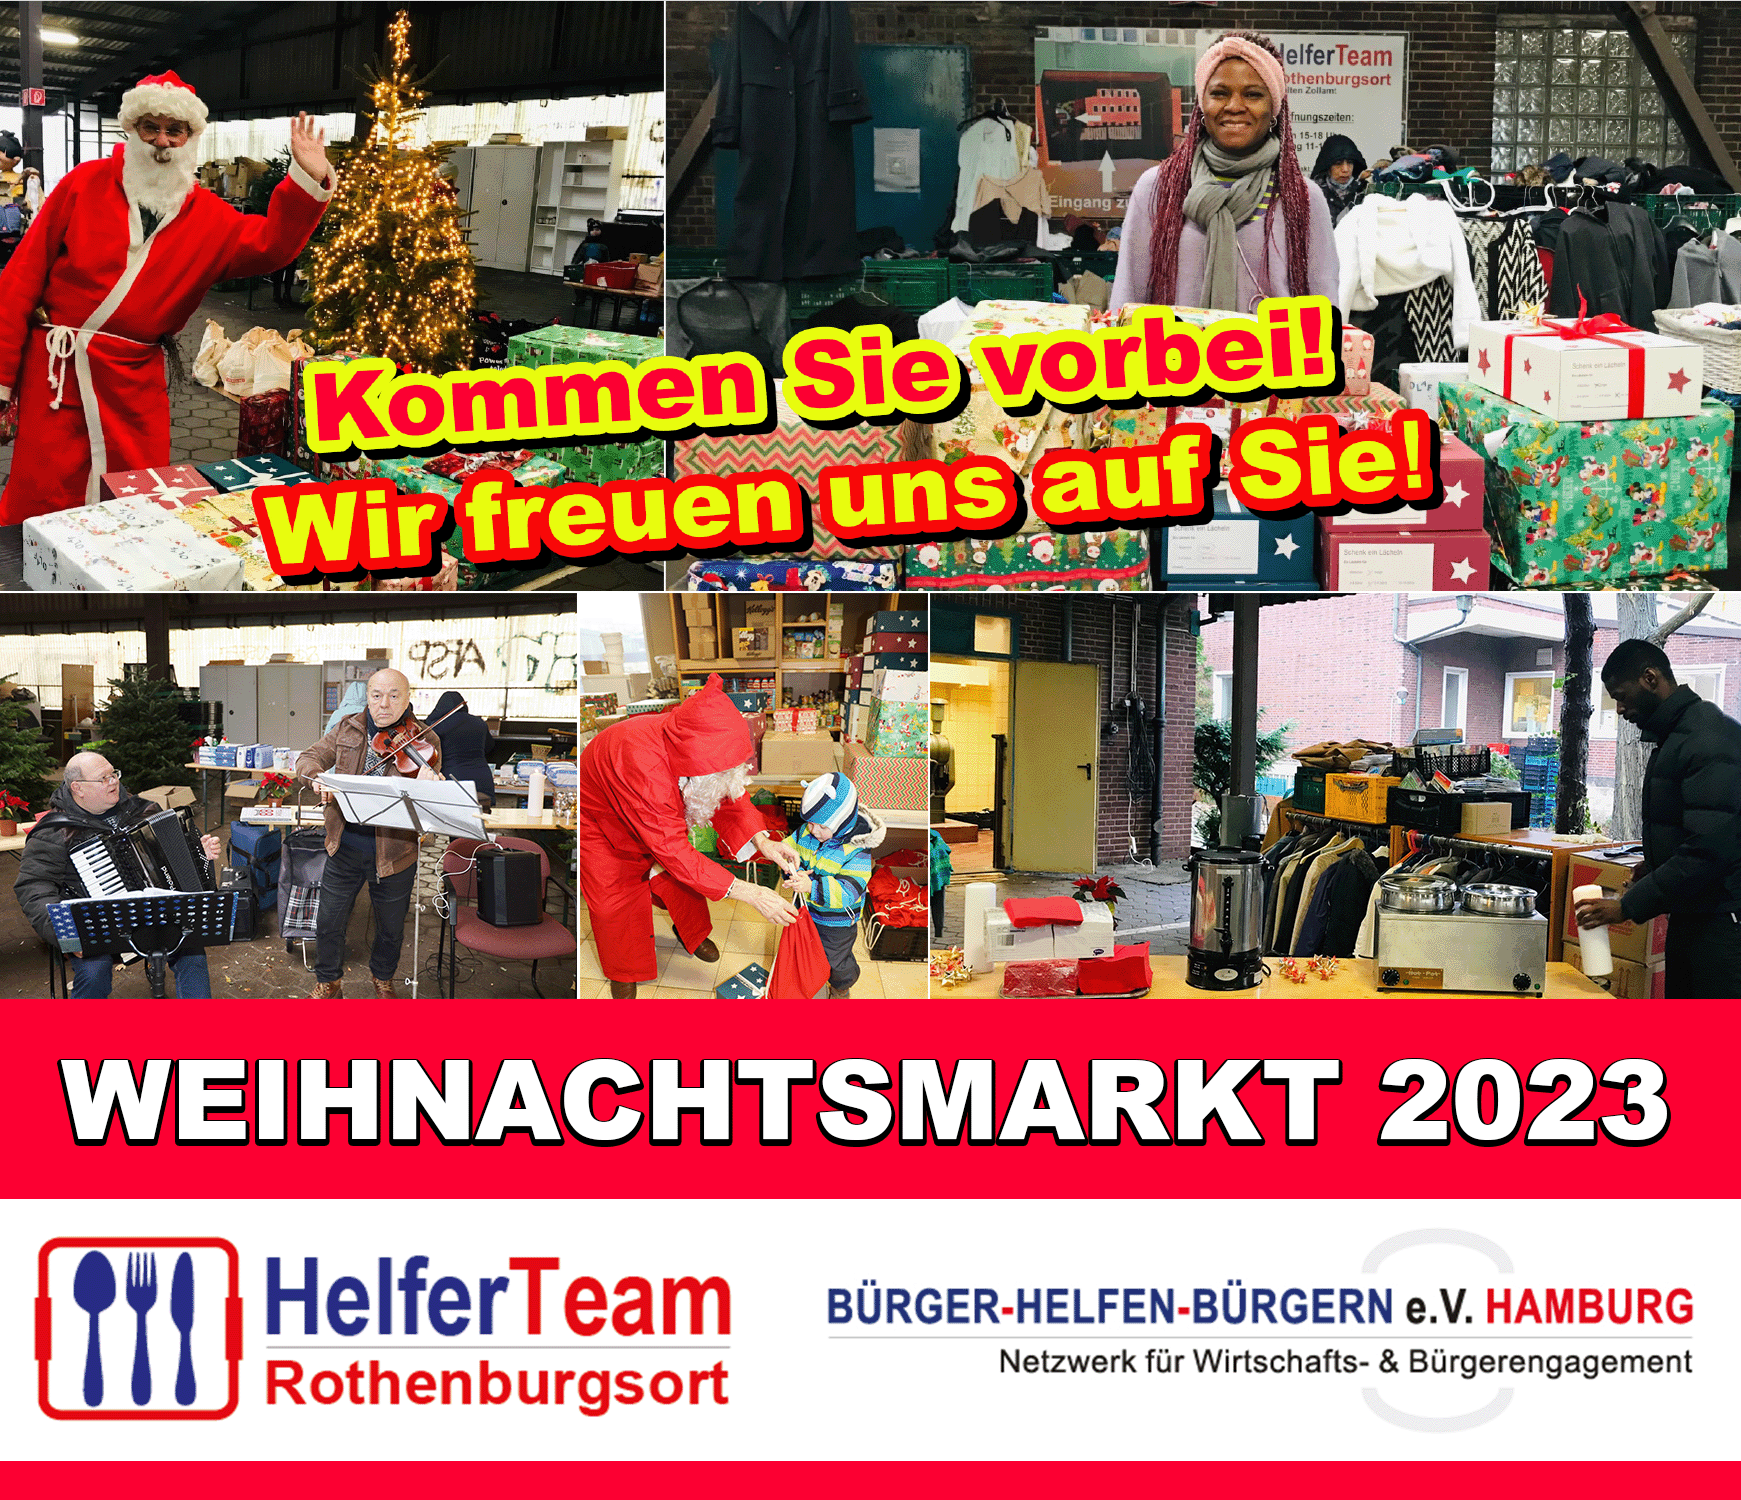 HelferTeamRothenburgsort lädt ein zum Weihnachtsmarkt 2023